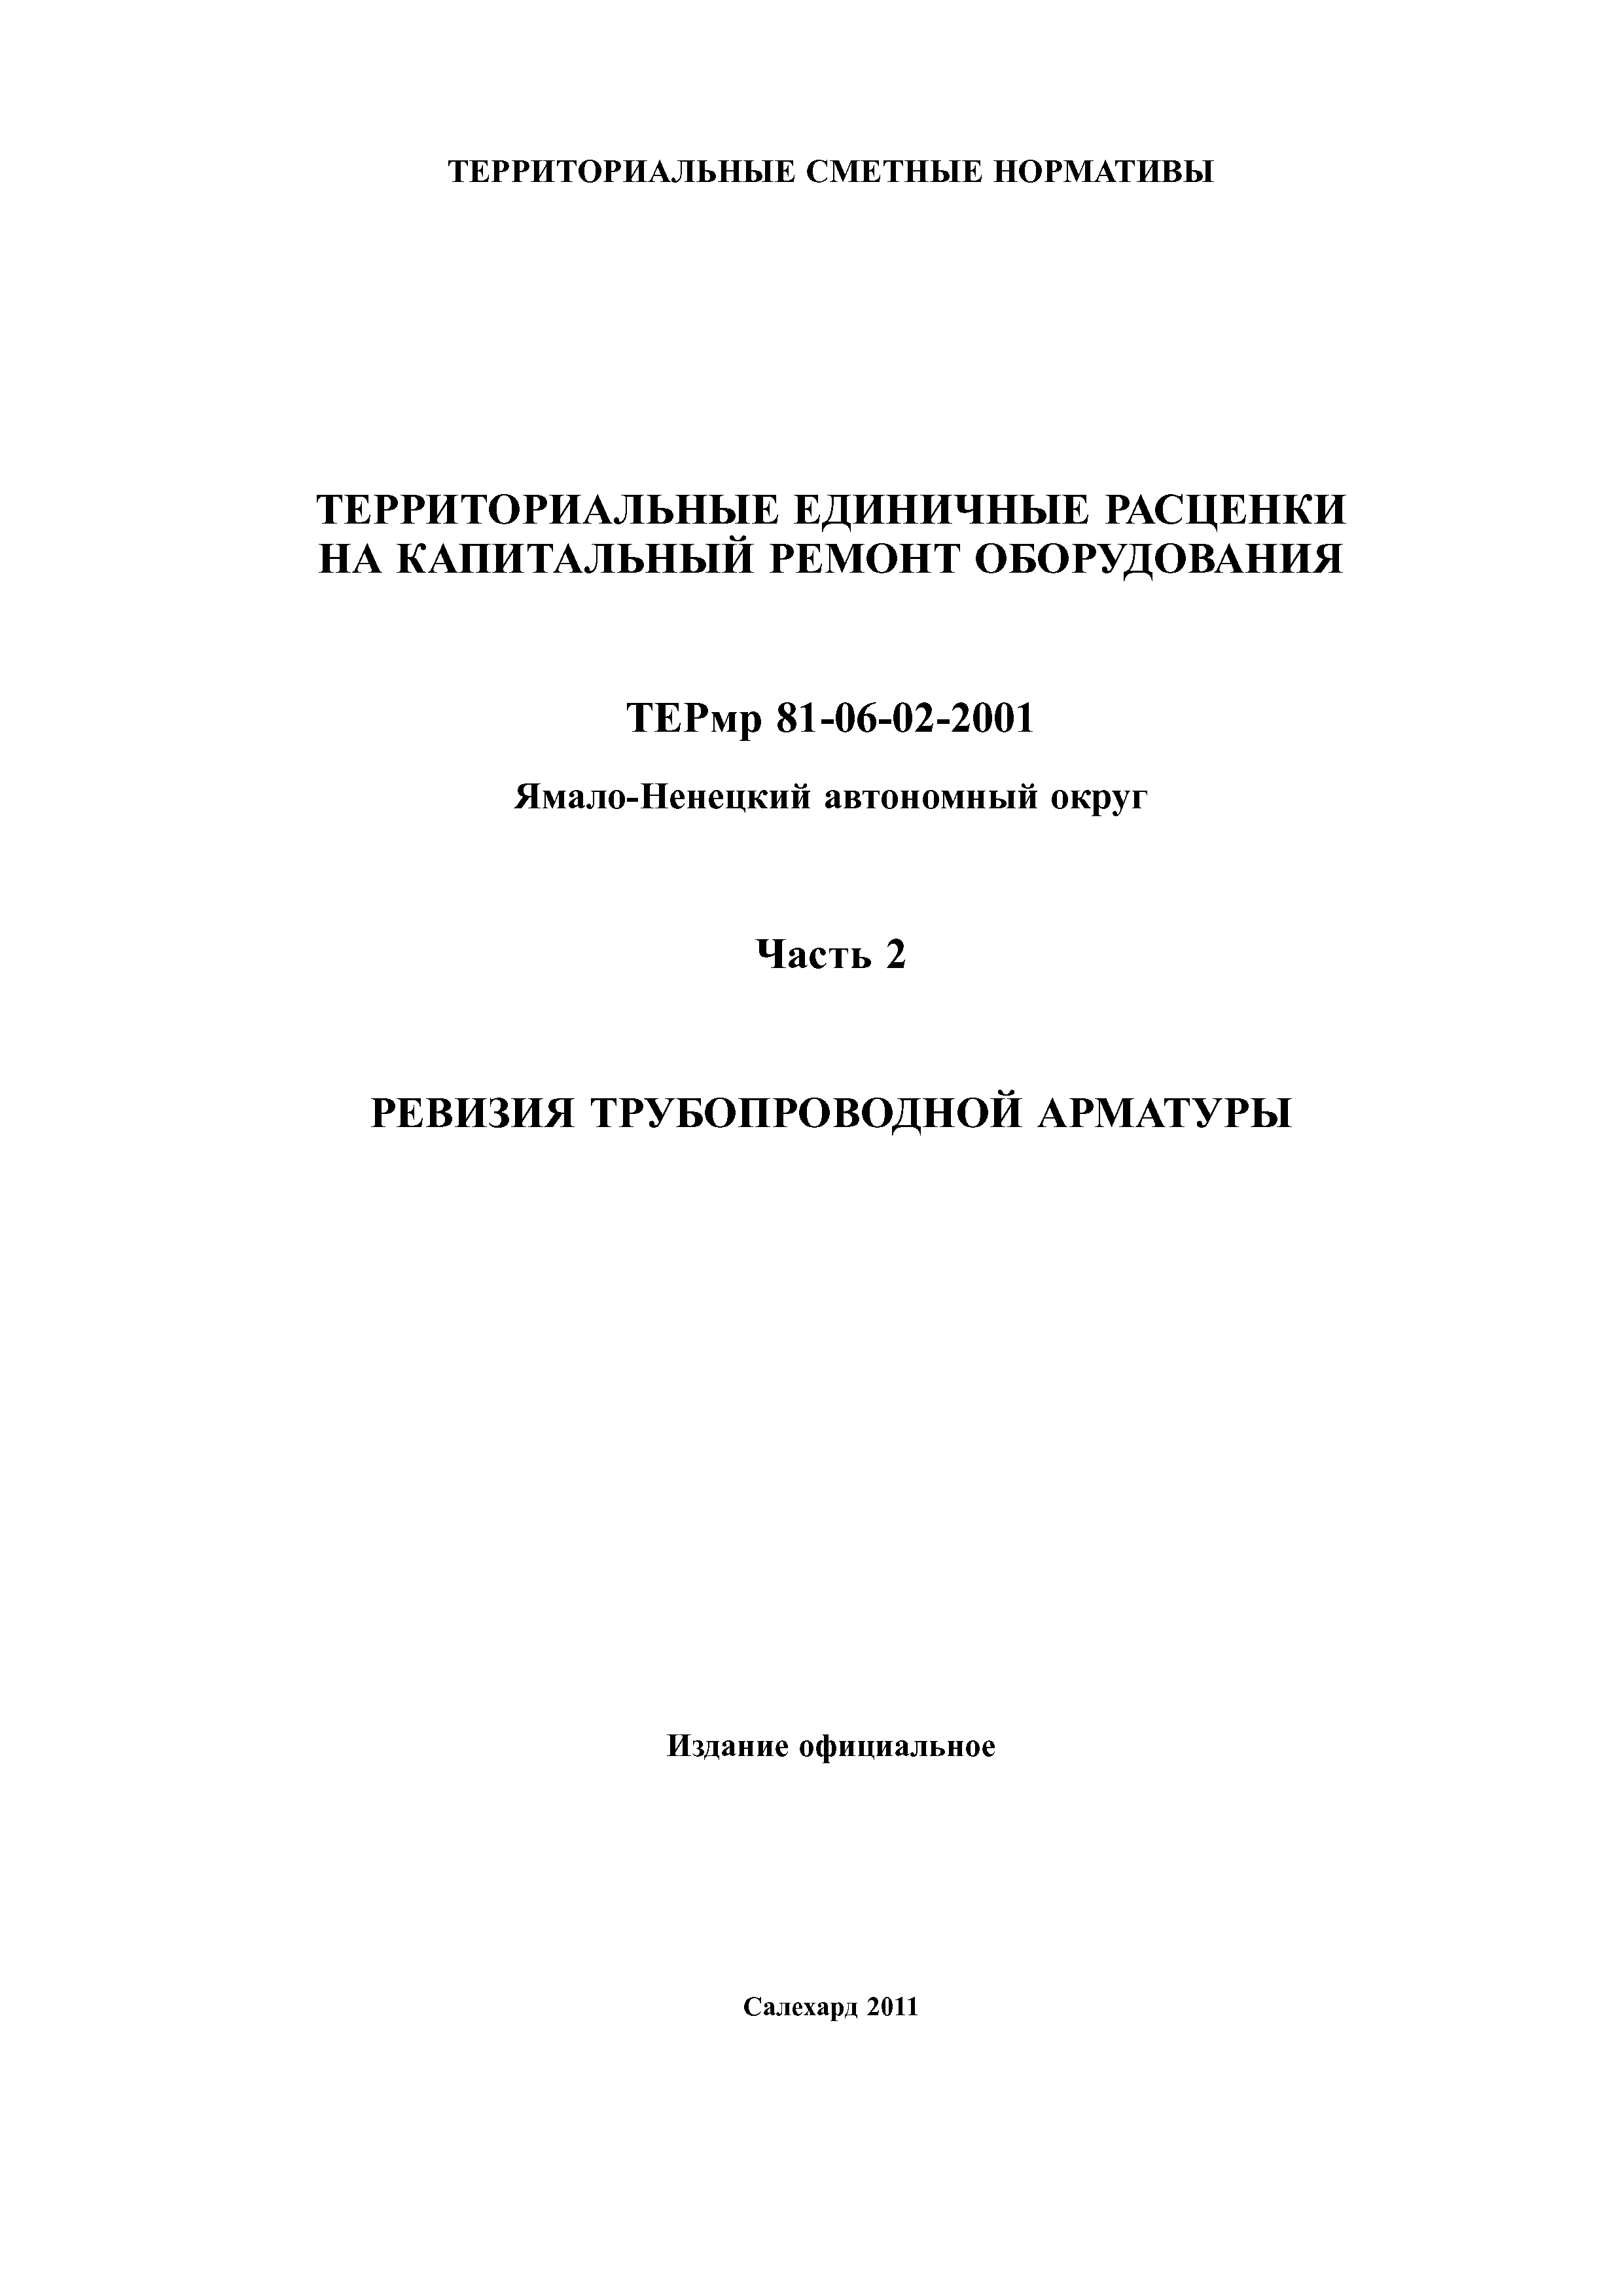 ТЕРмр Ямало-Ненецкий автономный округ 02-2001